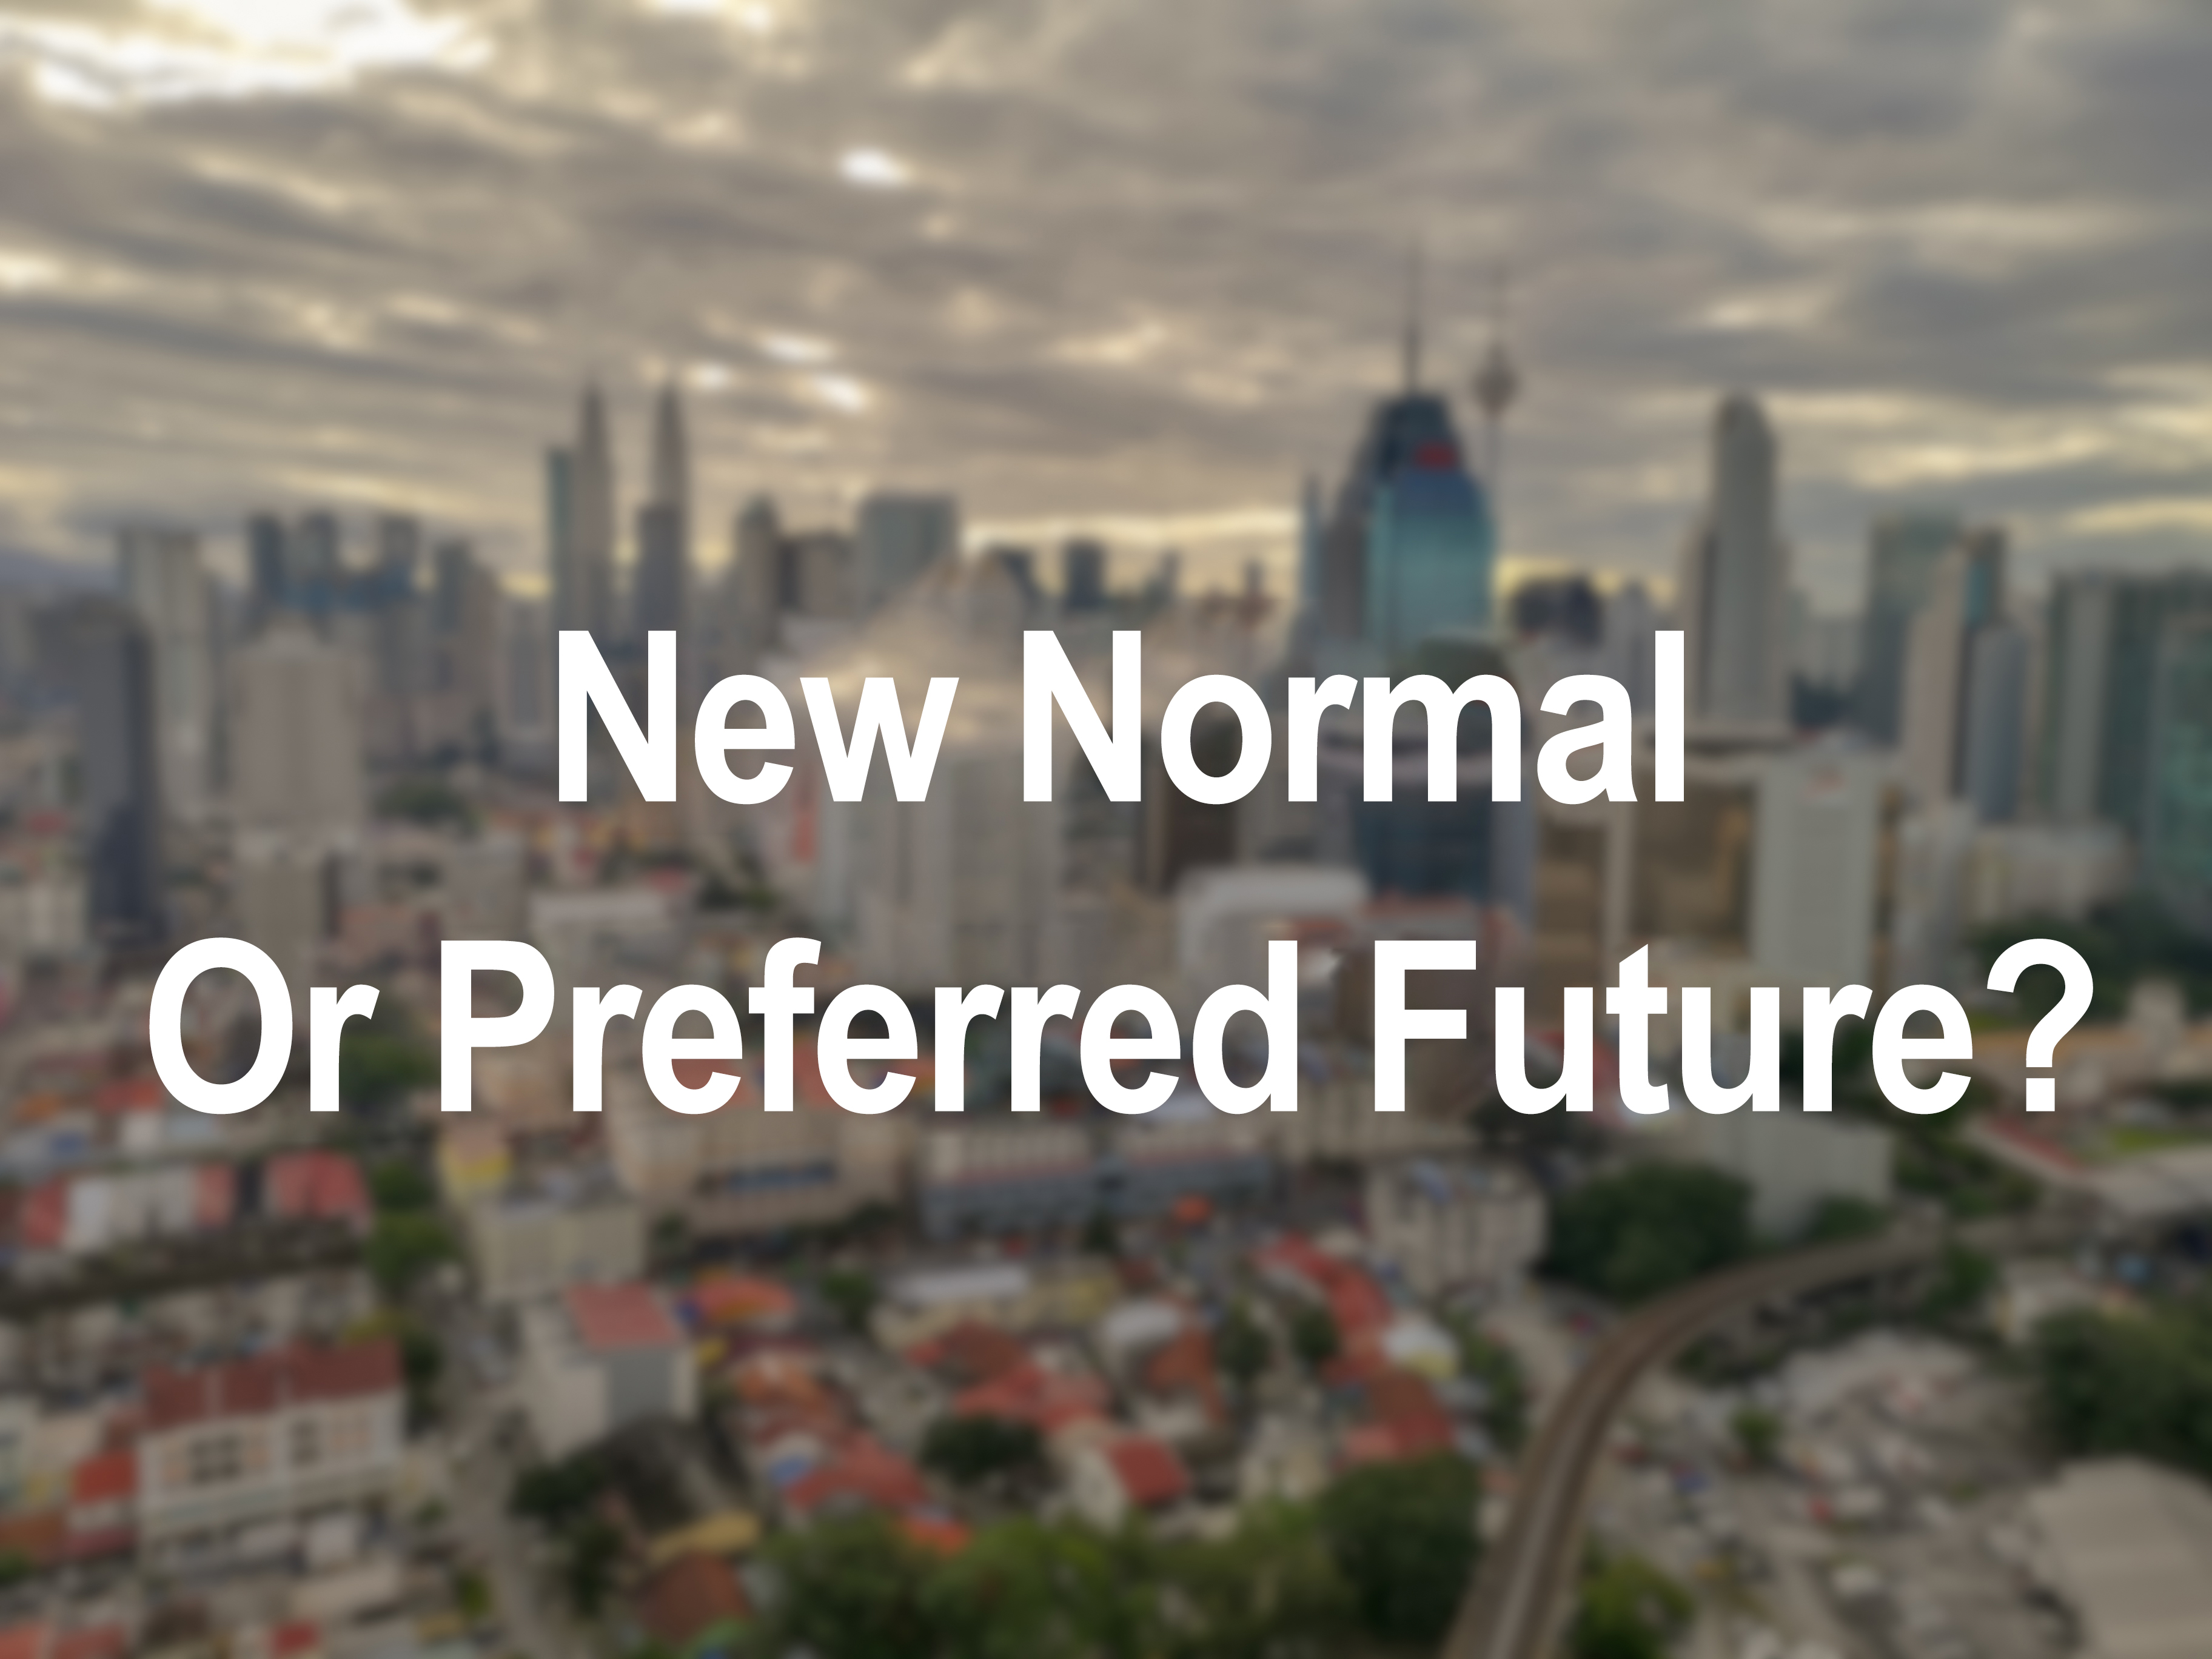 New Normal or Preferred Future?